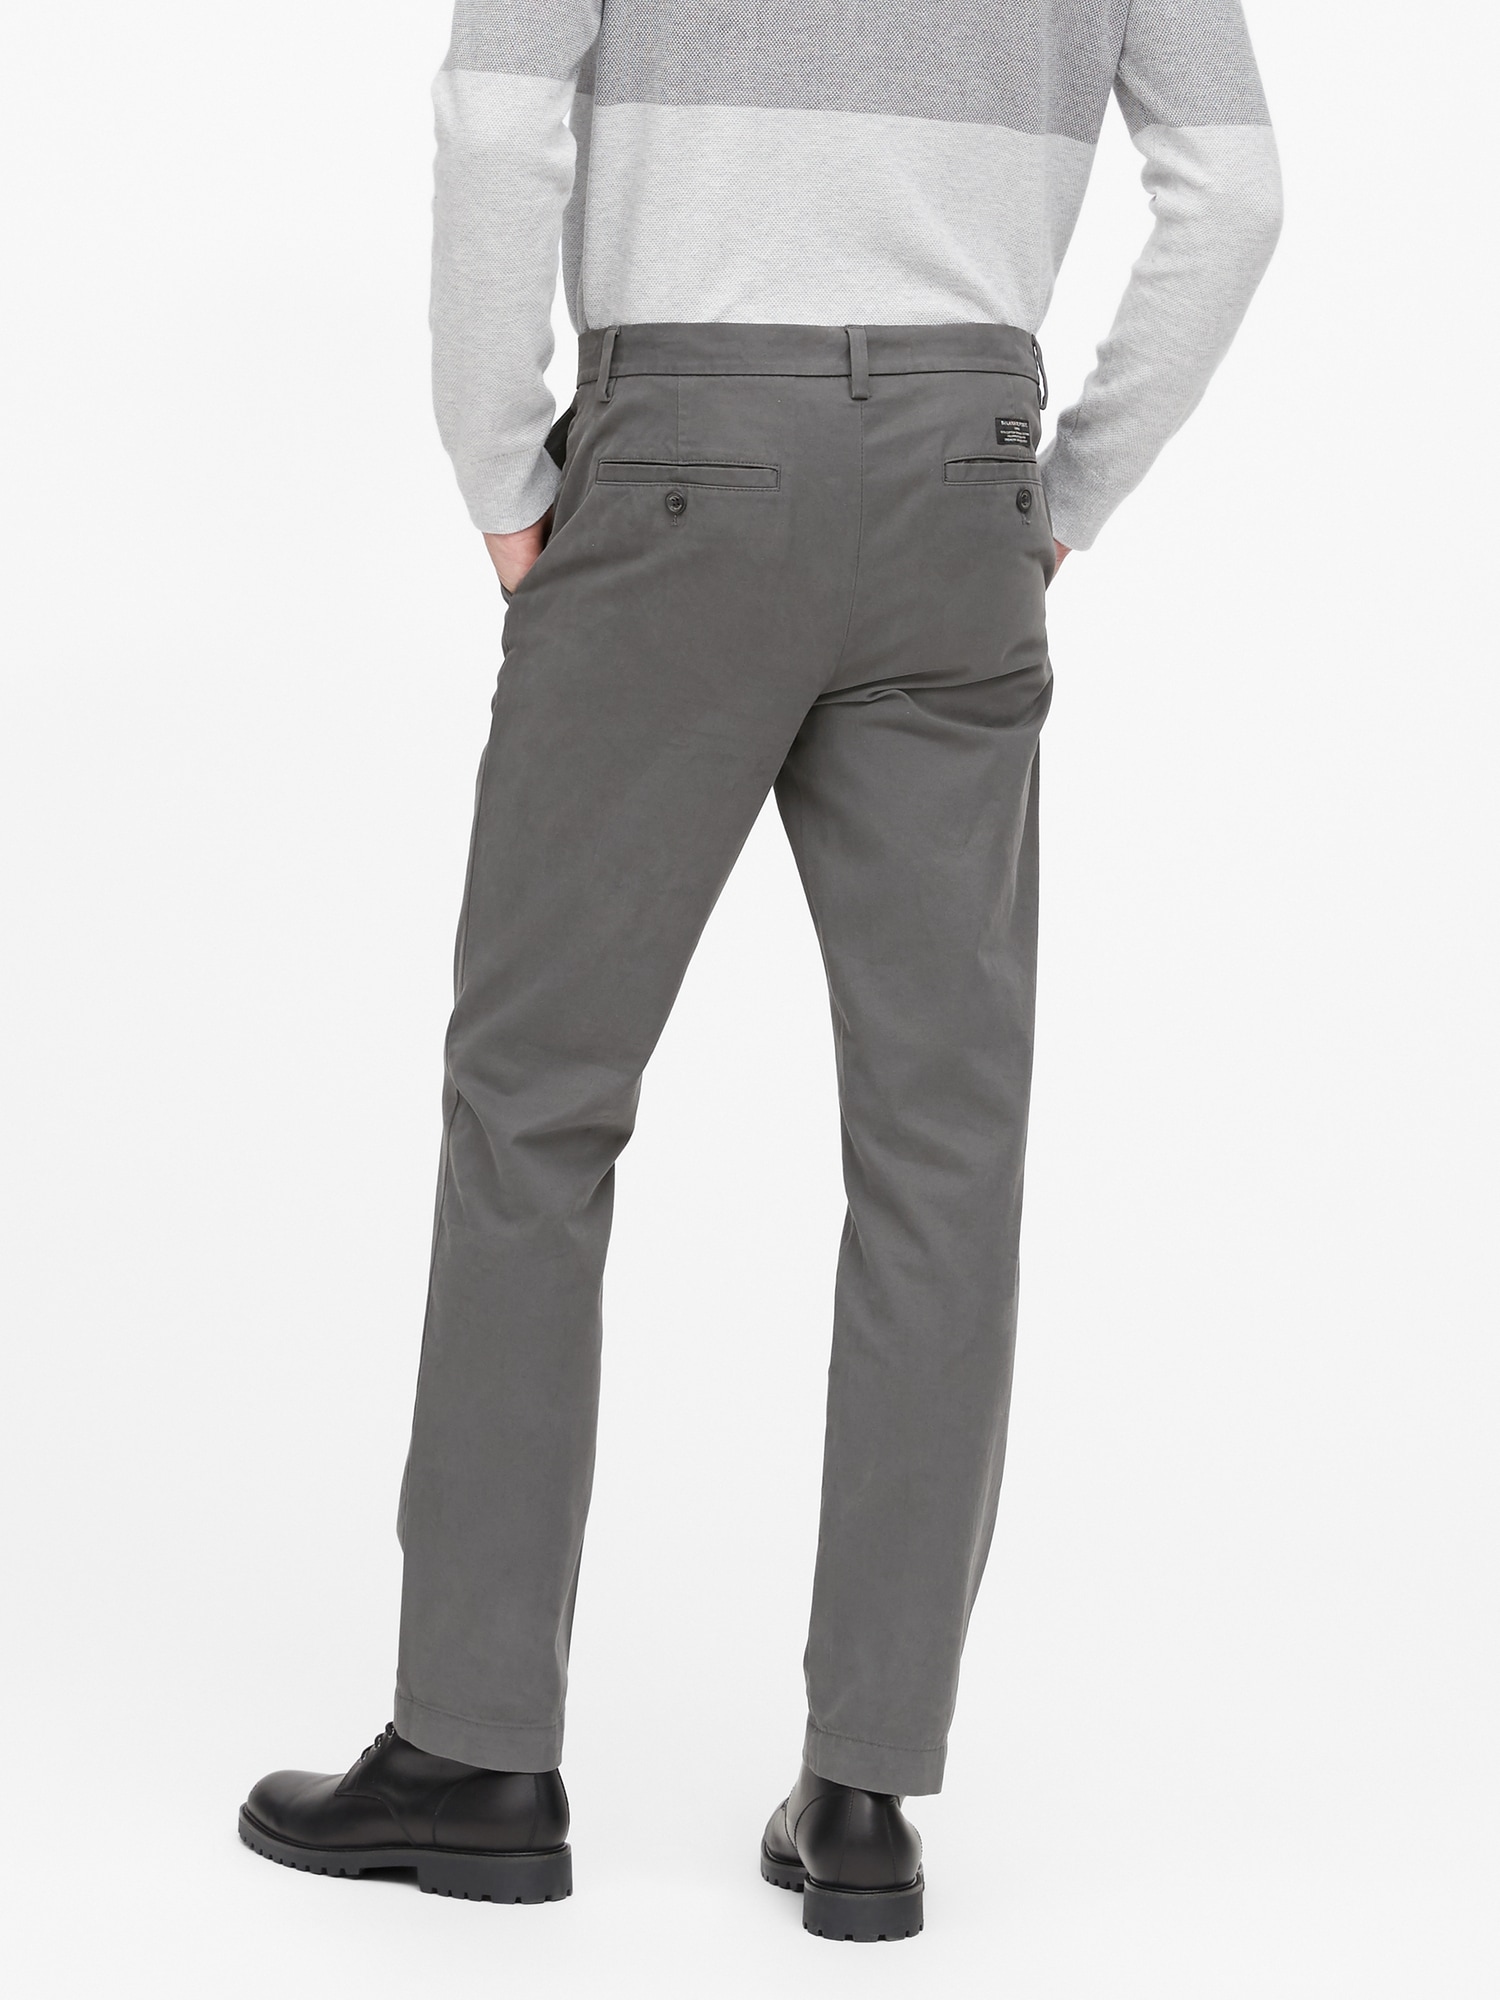 chino grey pants